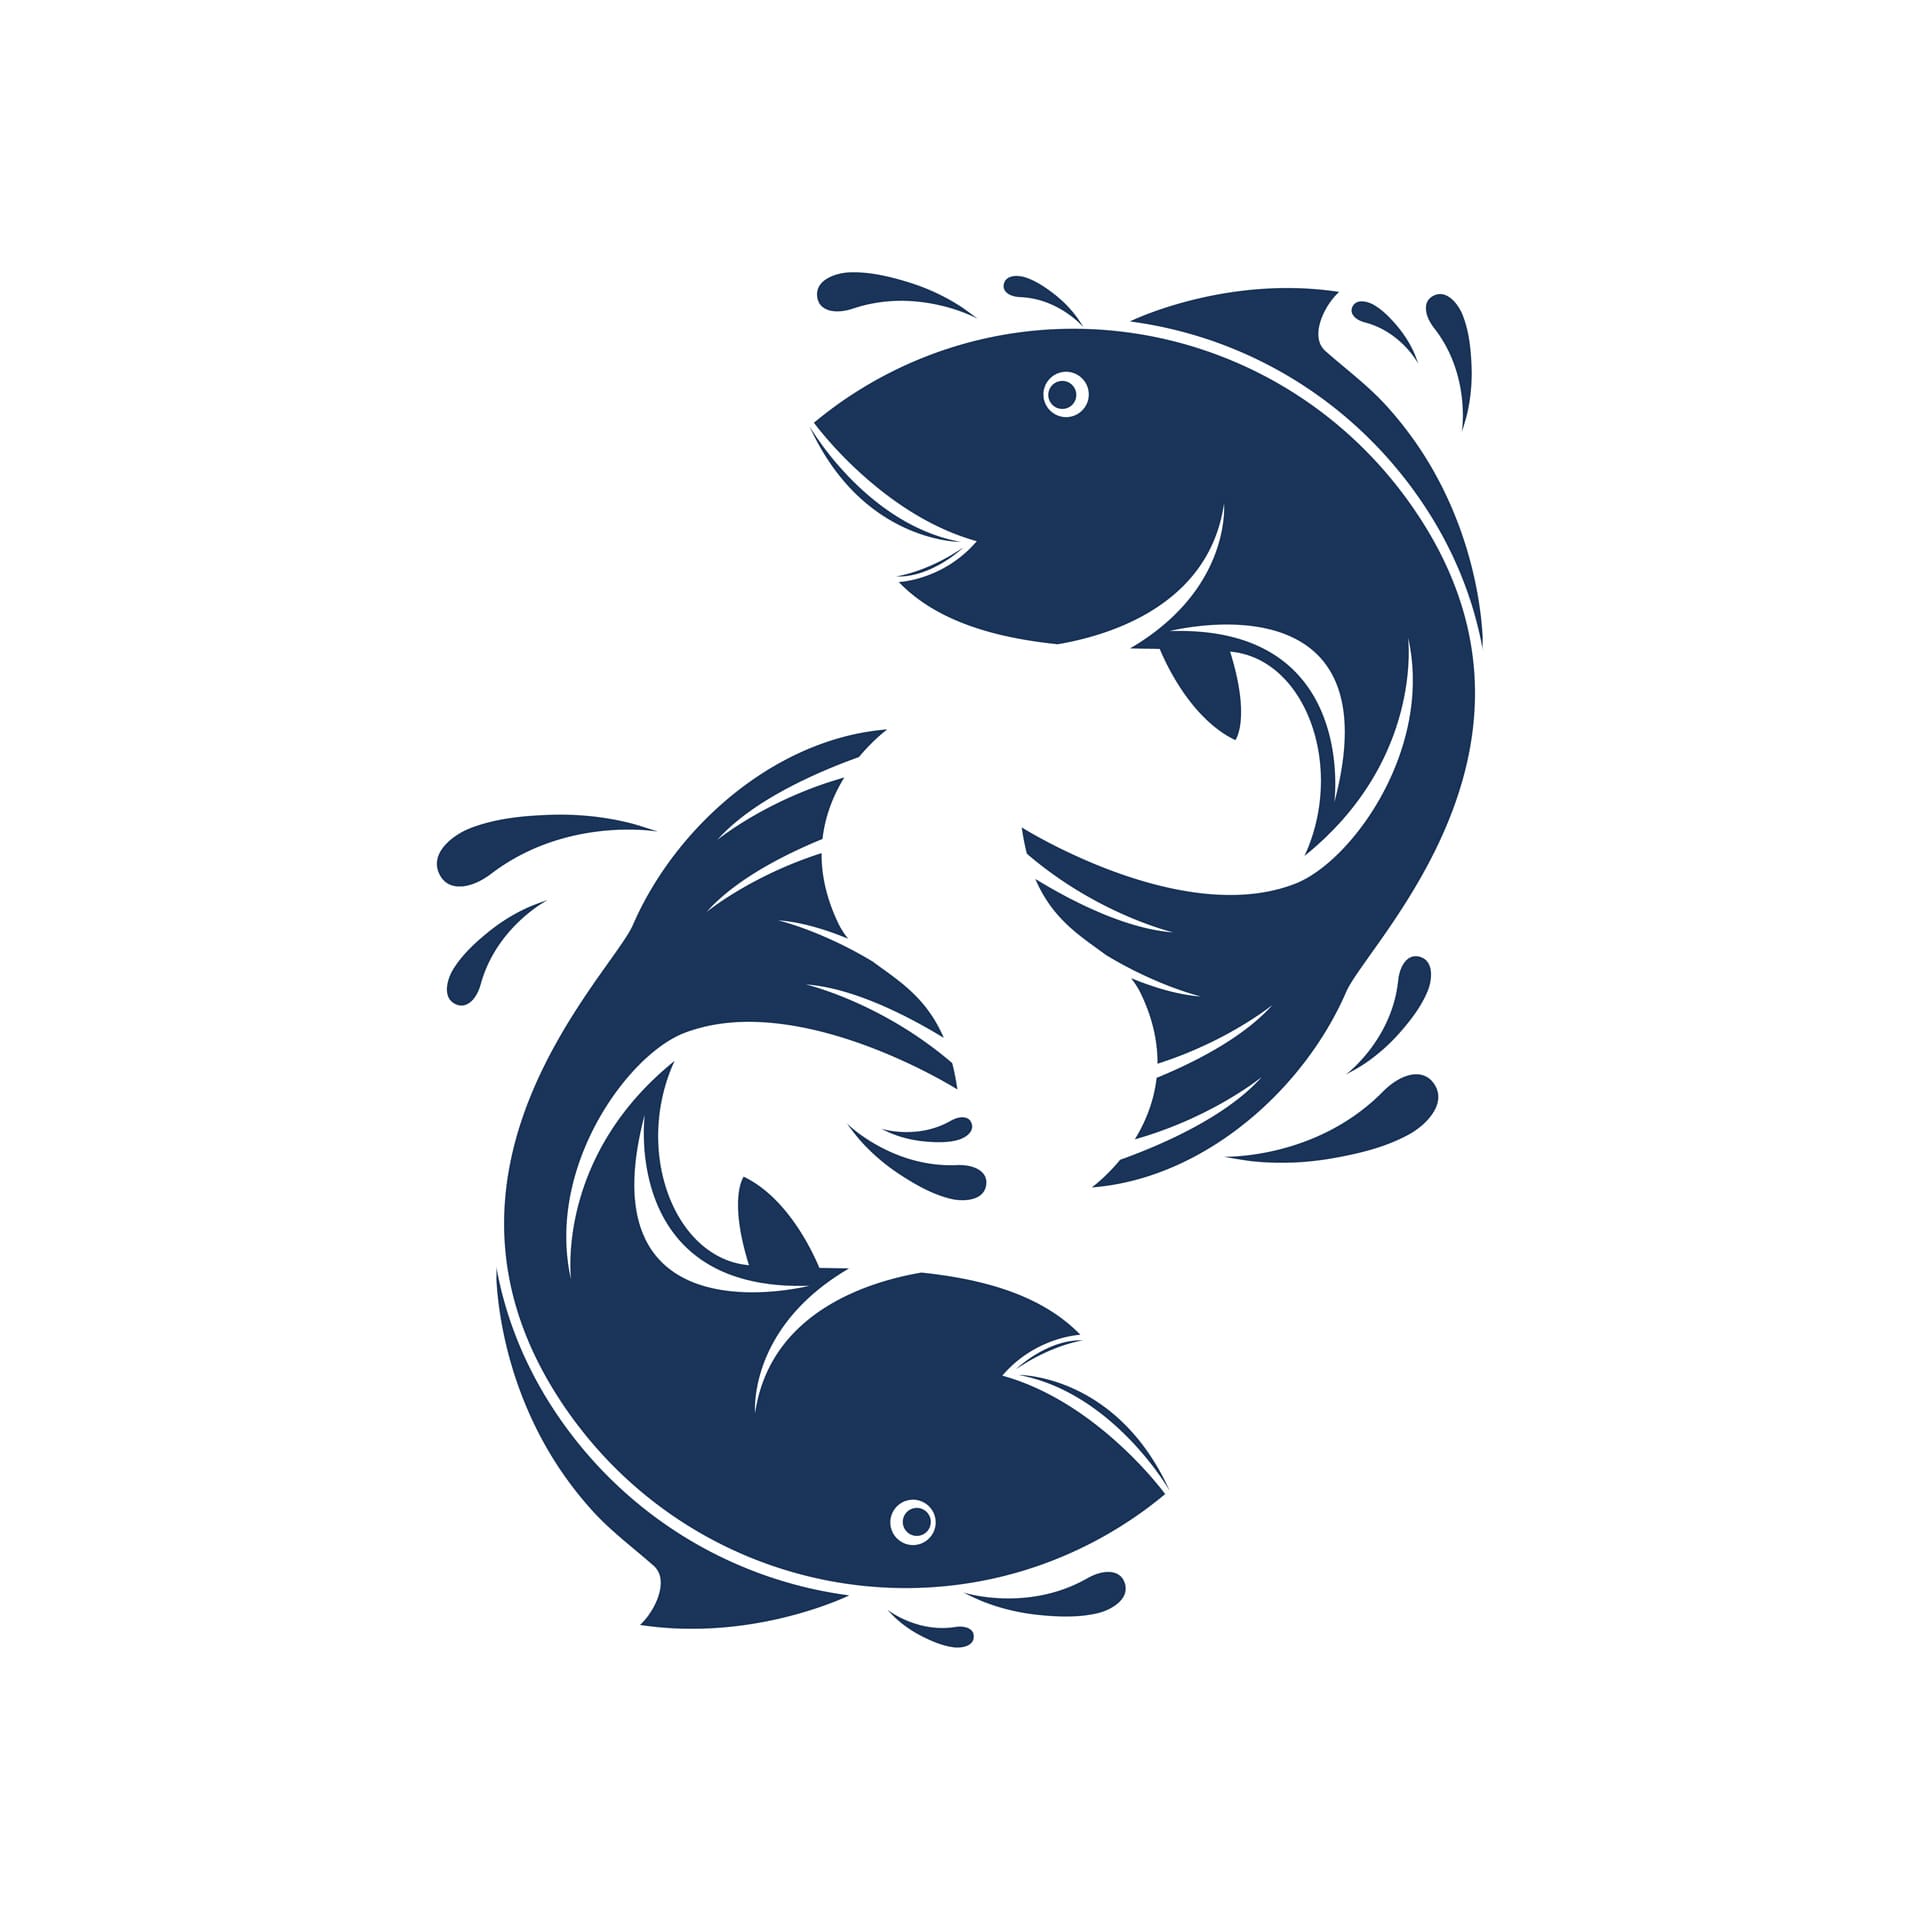 Fish silhouette logo design template